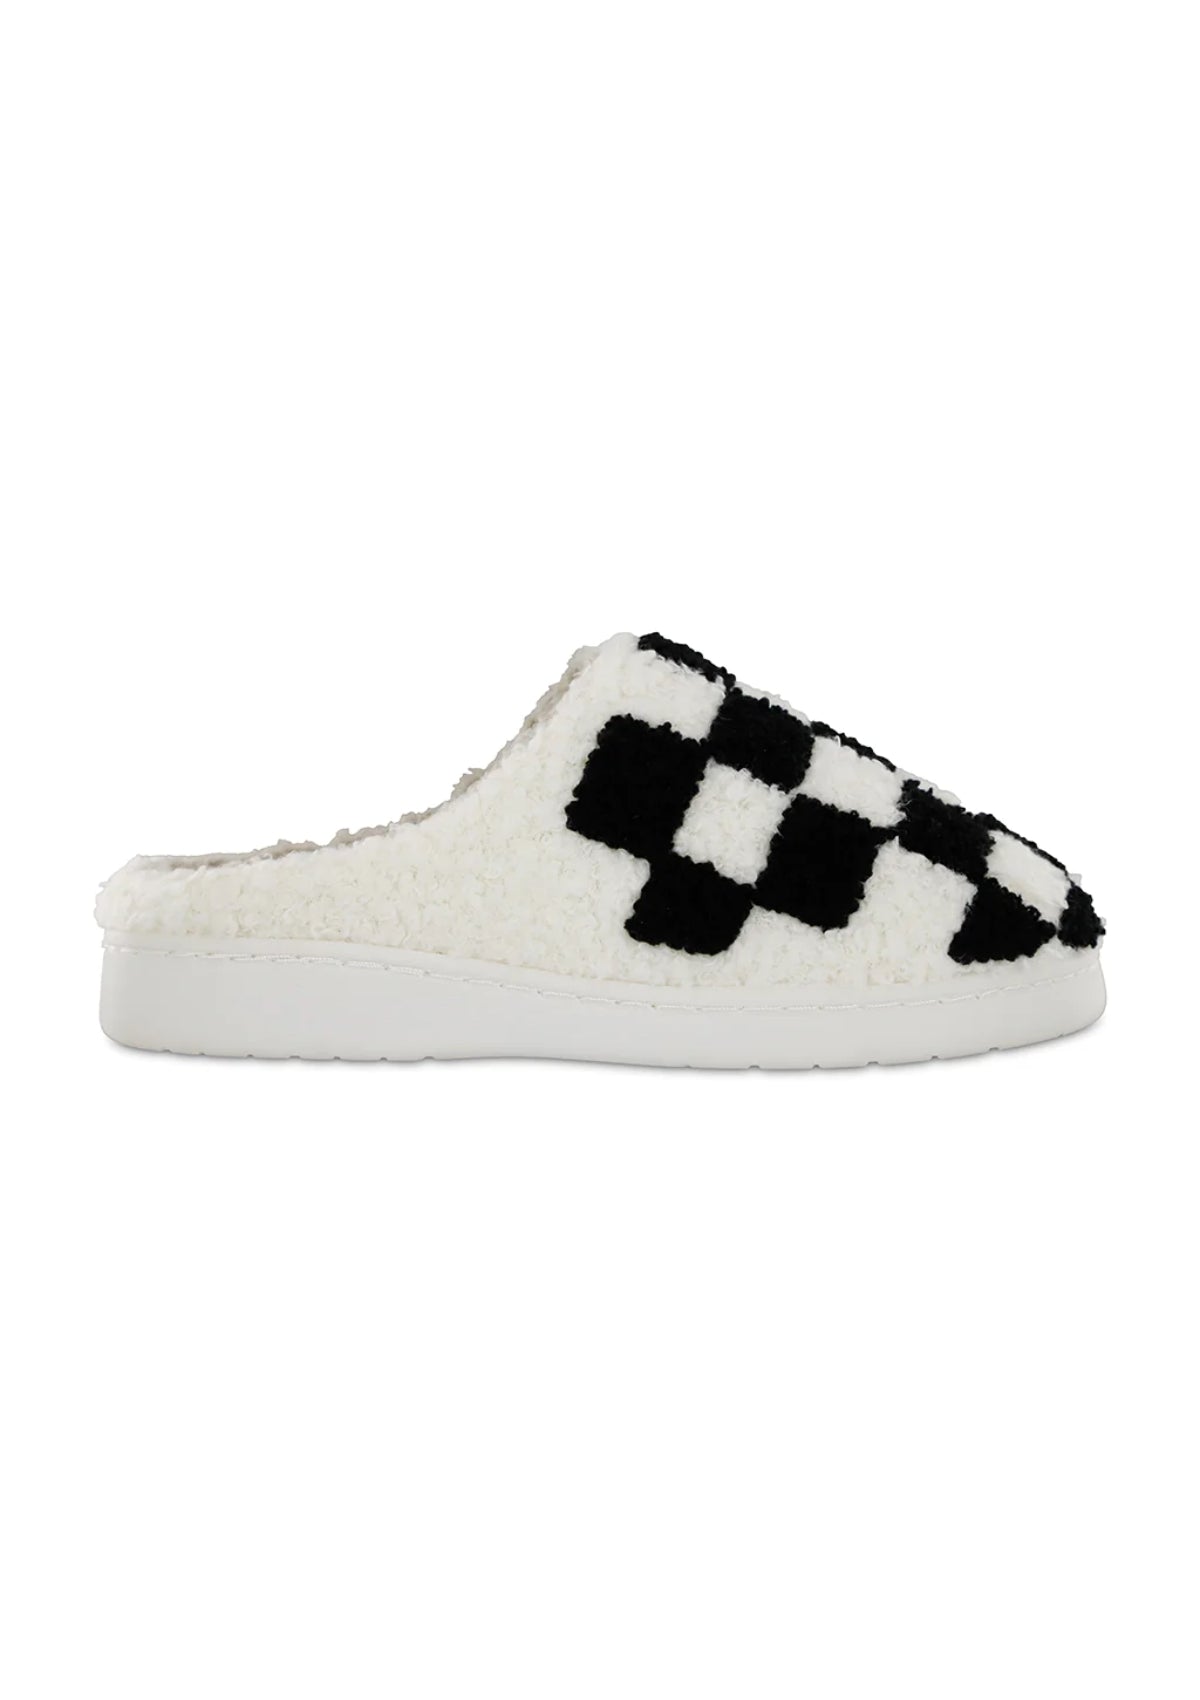 Cozi Checker Slipper, Black and White Checker